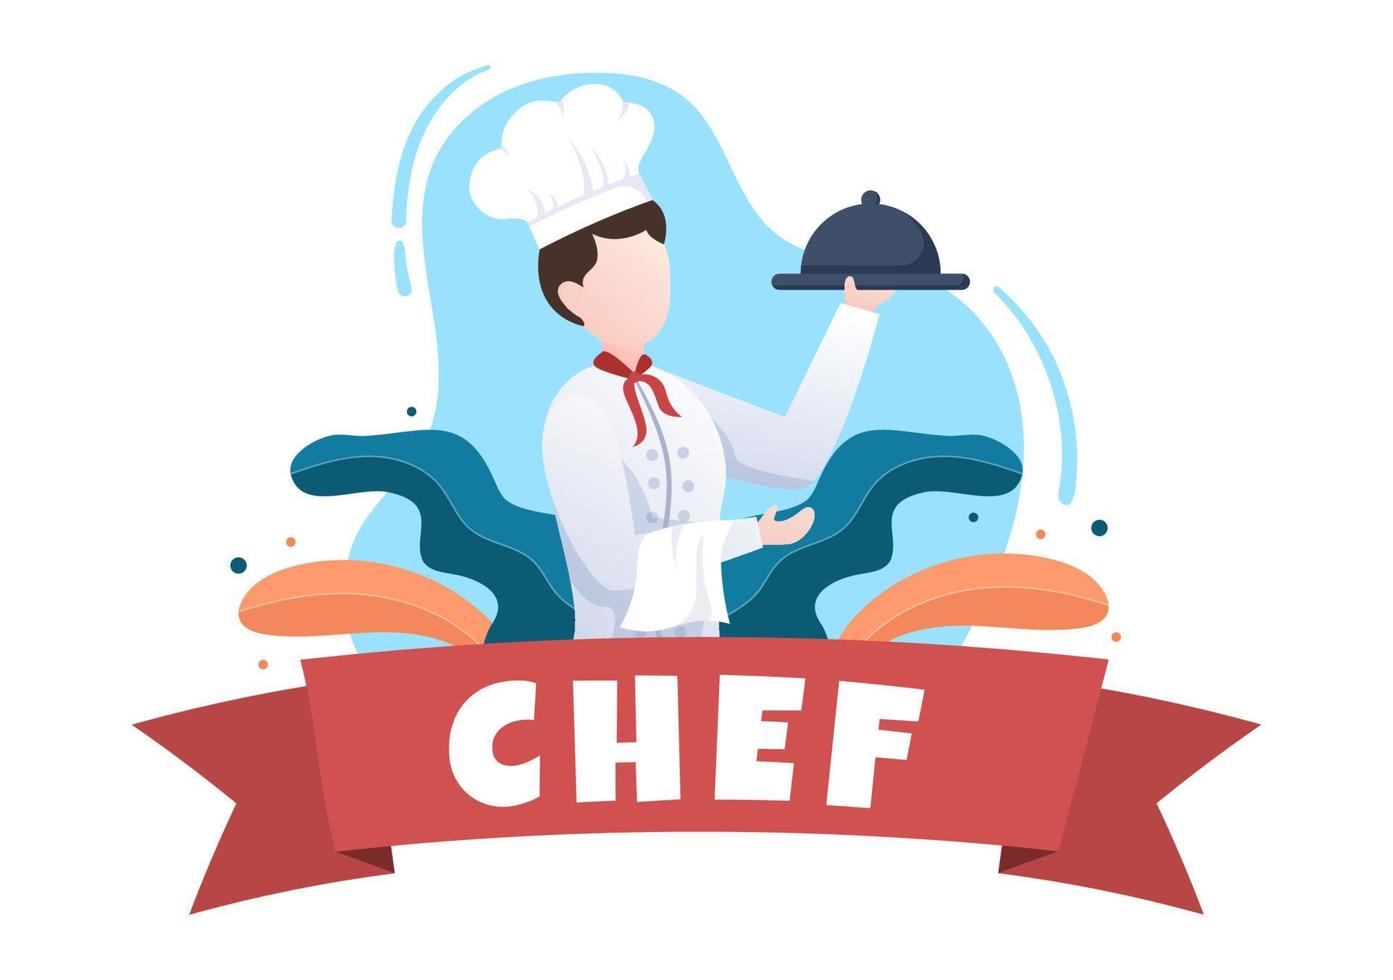 professionelle kochzeichentrickfigur, die illustration mit verschiedenen tabletts und lebensmitteln kocht, um köstliches essen zu servieren, das für poster oder hintergrund geeignet ist vektor